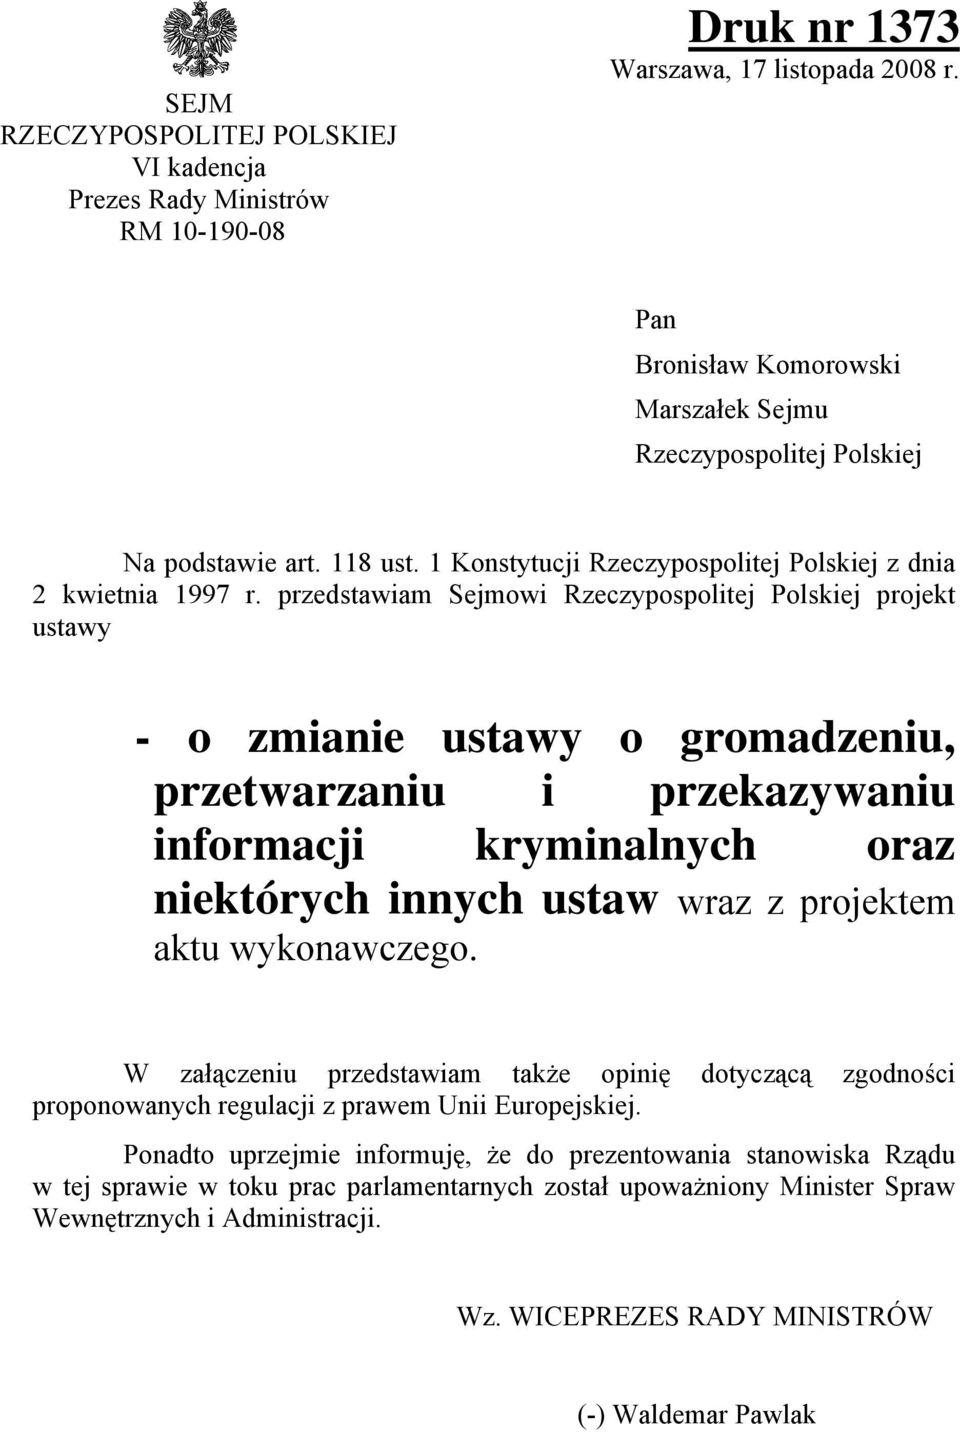 przedstawiam Sejmowi Rzeczypospolitej Polskiej projekt ustawy - o zmianie ustawy o gromadzeniu, przetwarzaniu i przekazywaniu informacji kryminalnych oraz niektórych innych ustaw wraz z projektem